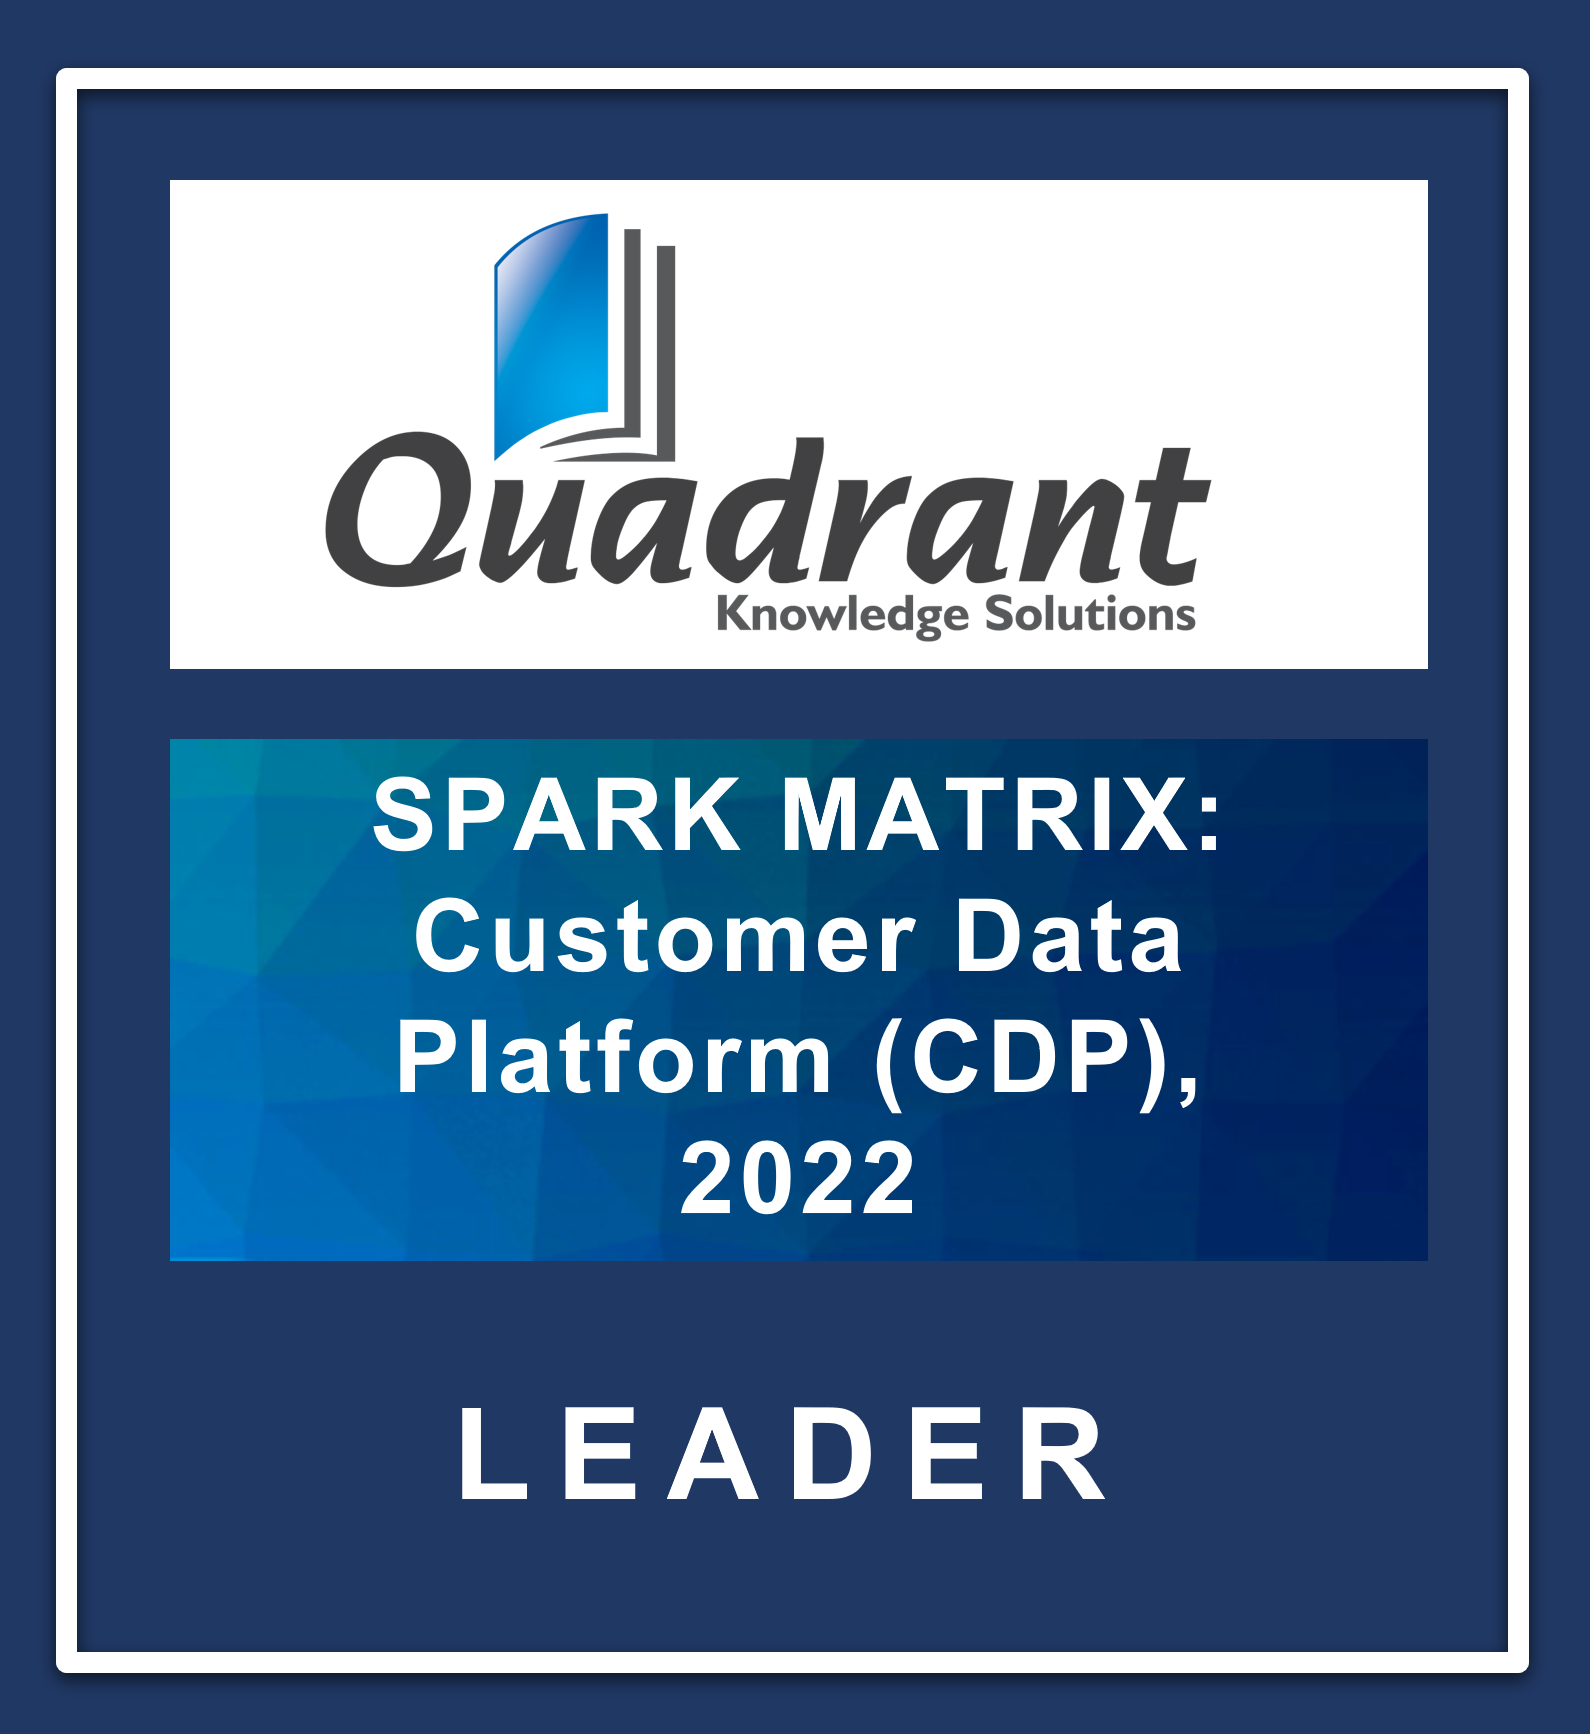 Badge for 2022 Spark Matrix leader in the Customer Data Platform category